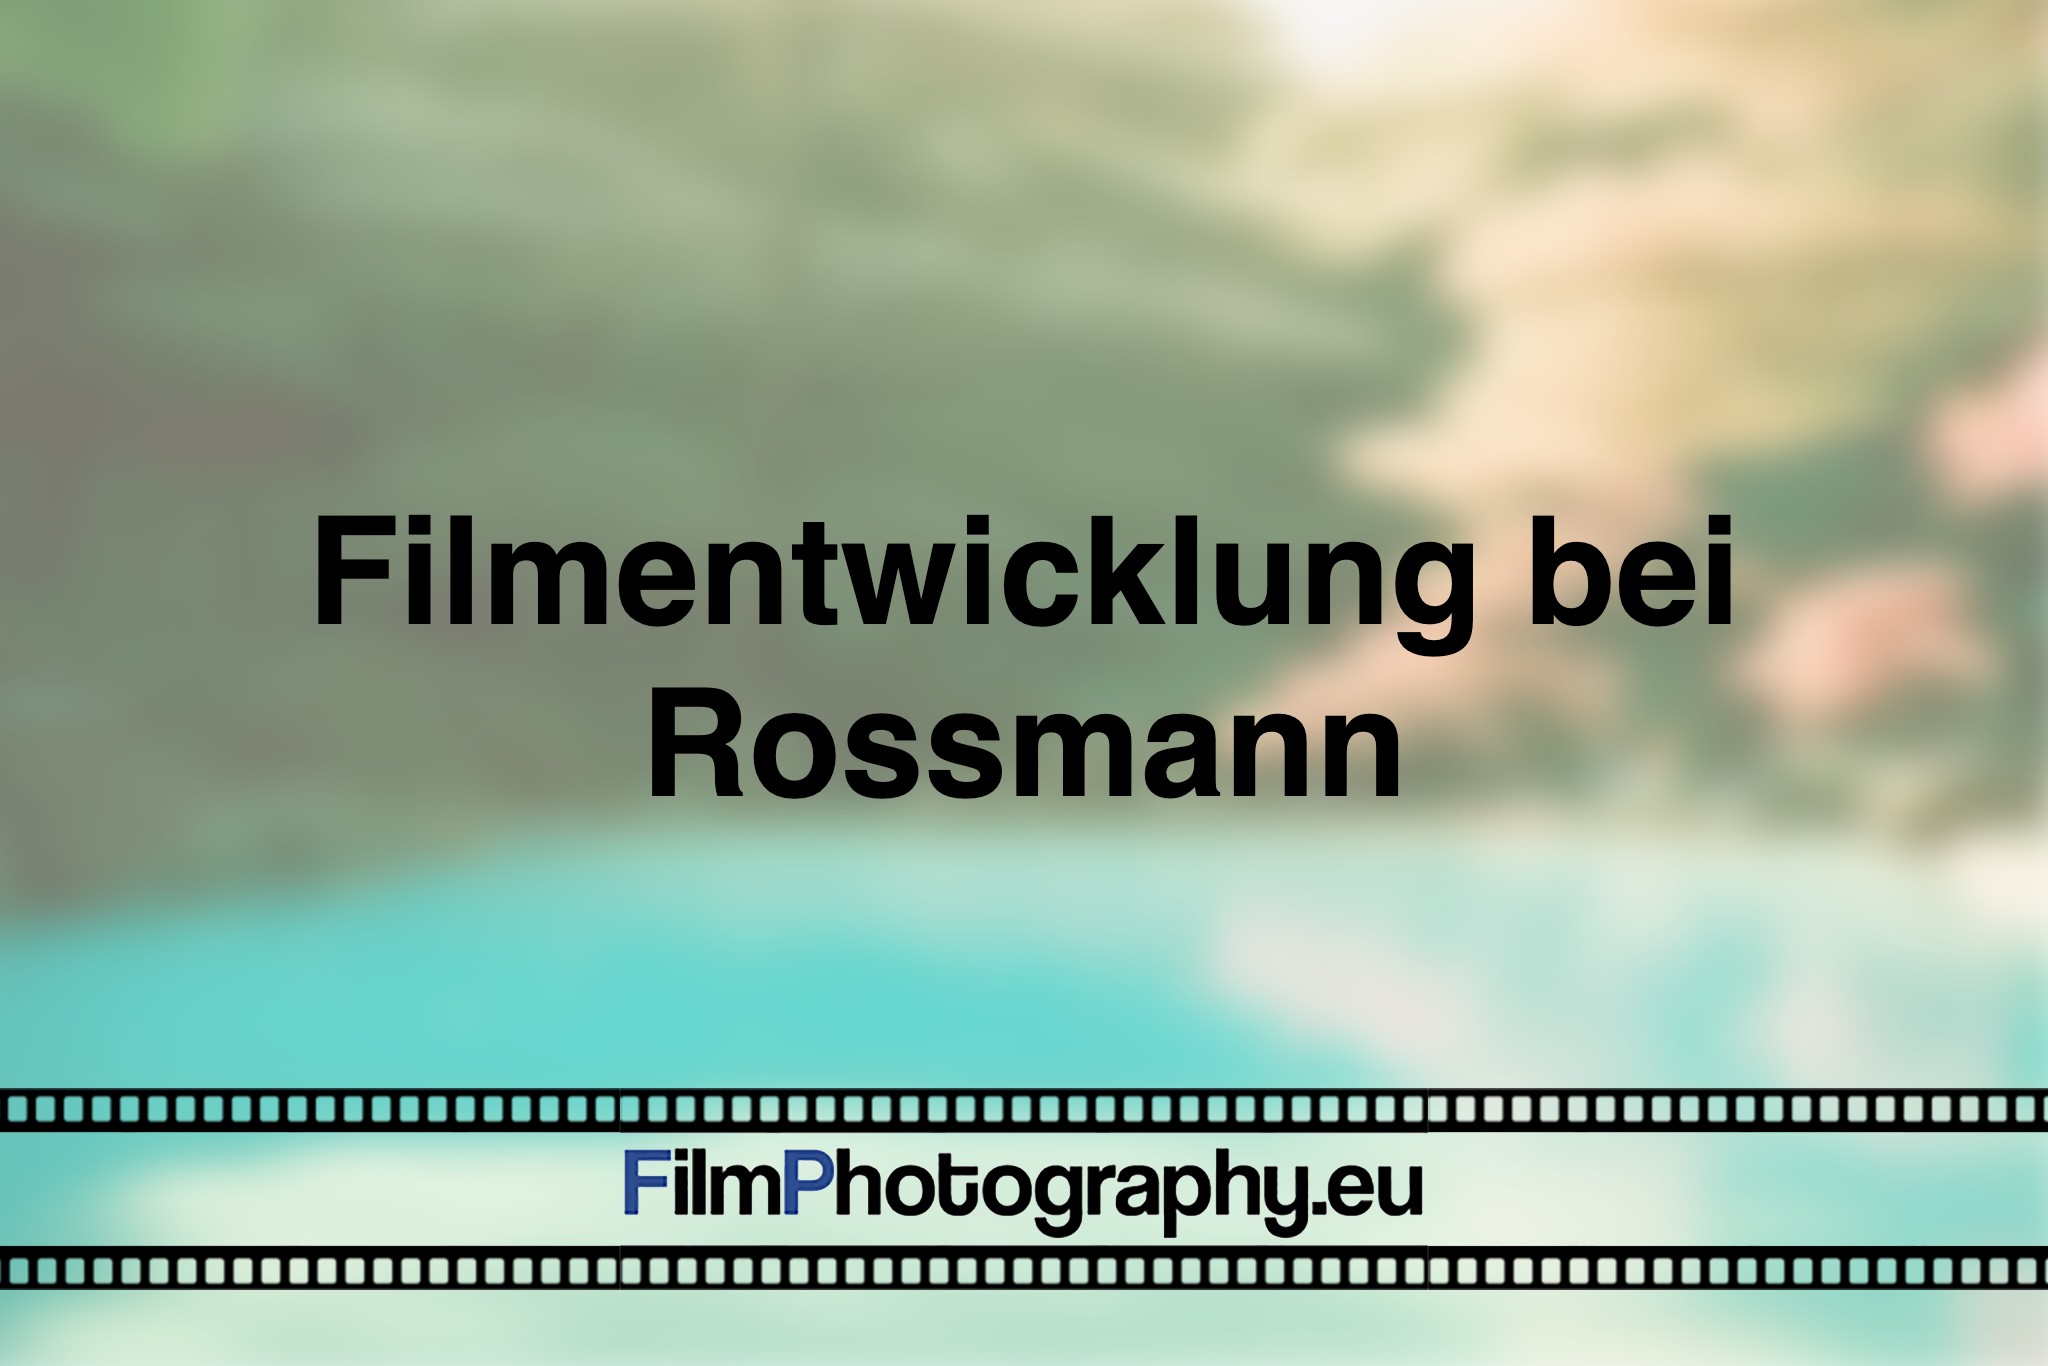 filmentwicklung-bei-rossmann-photo-bnv